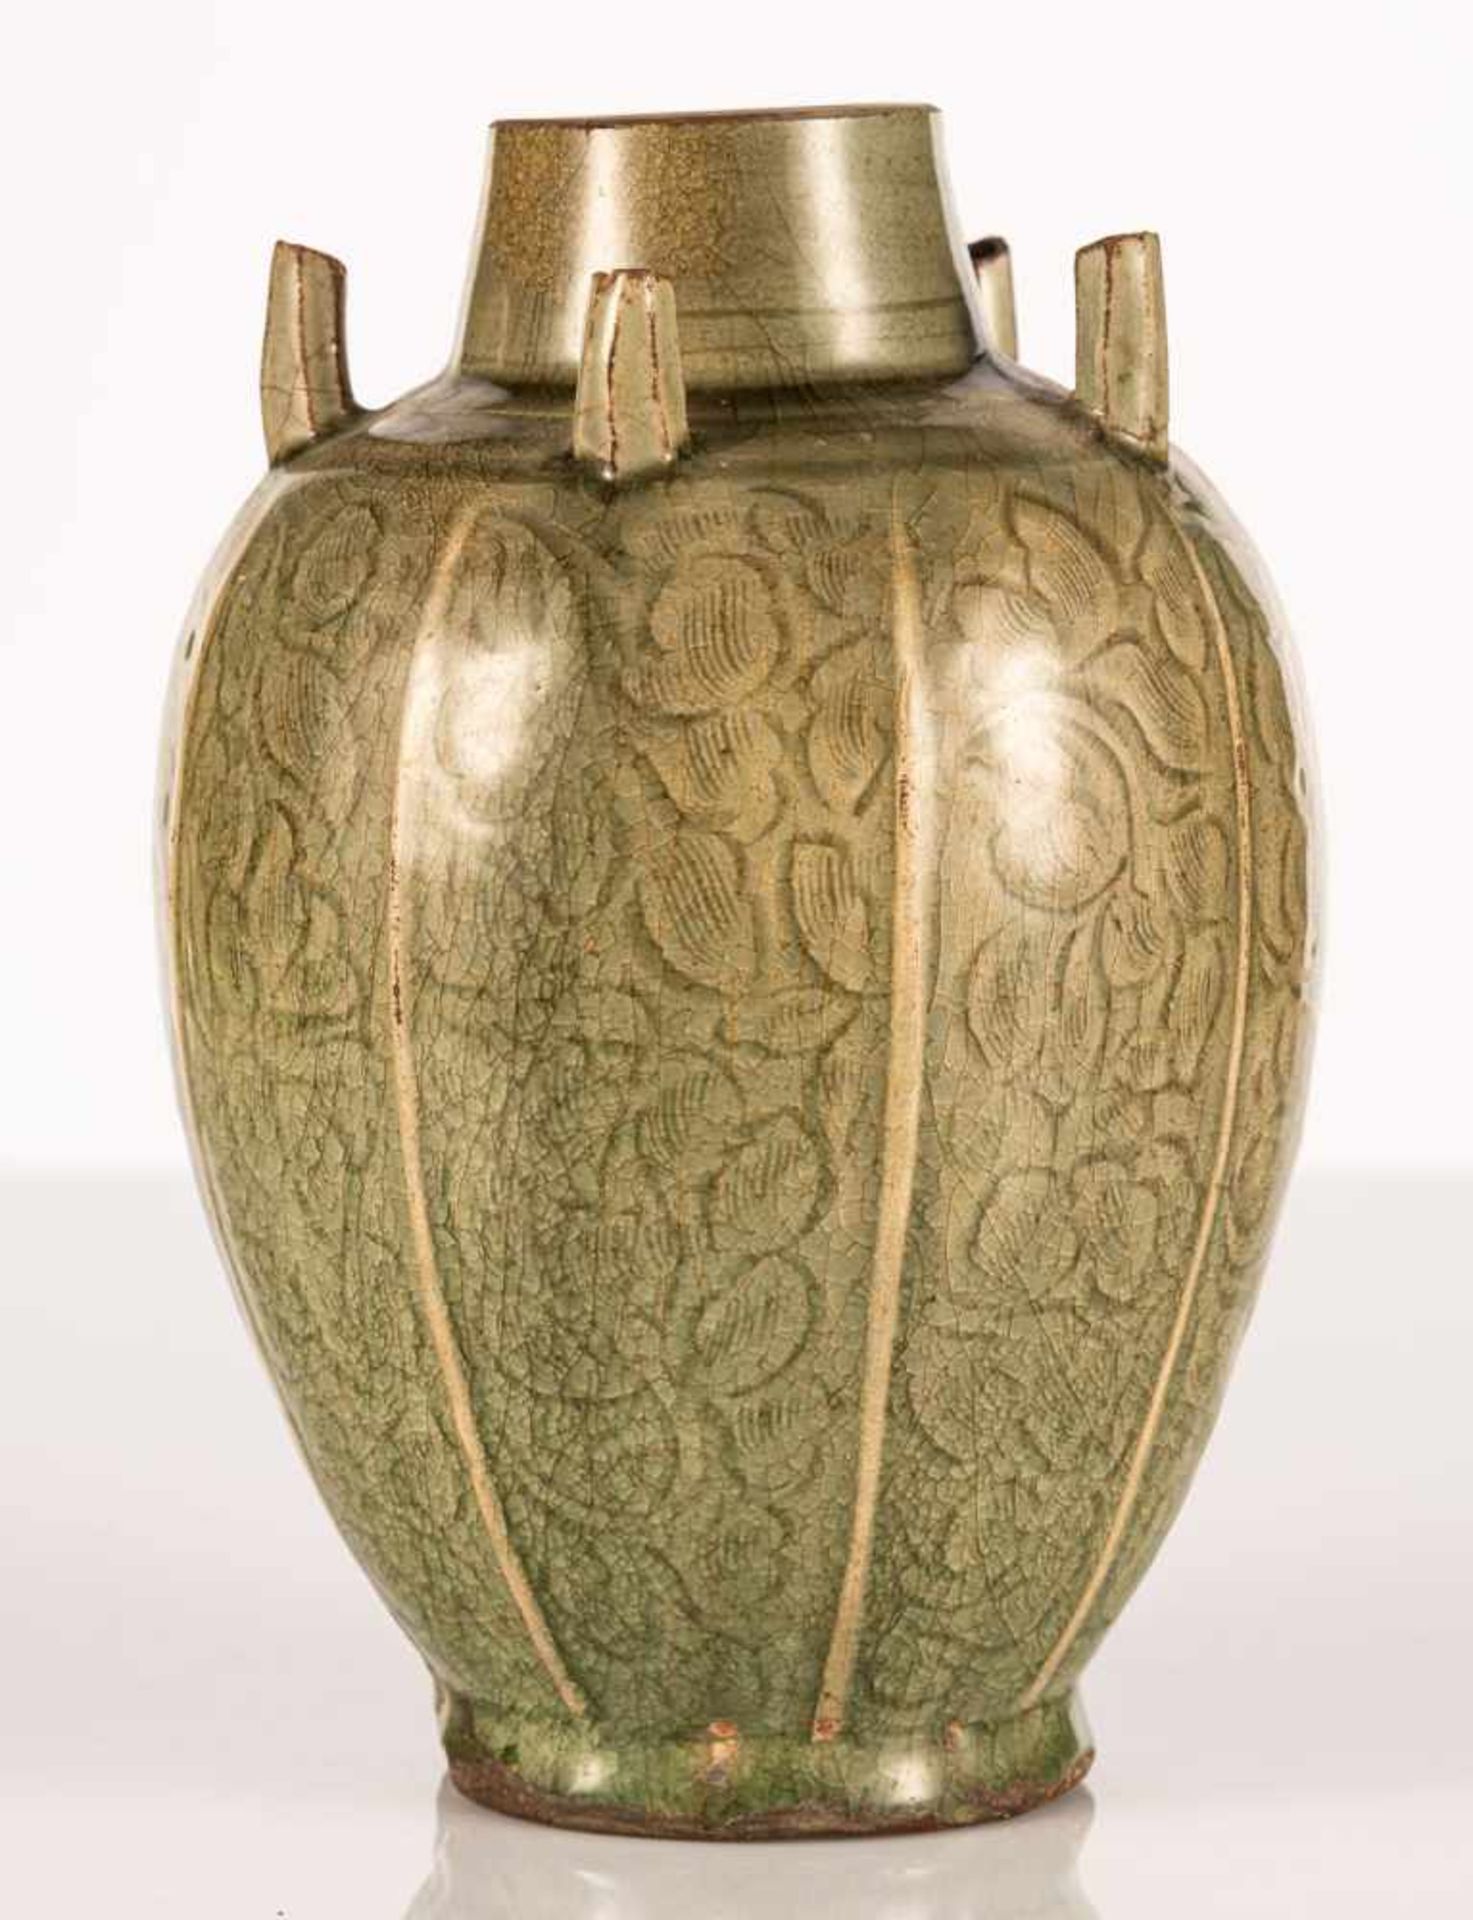 Seltene achtfach gelappte Vase mit fünf röhrenförmigen Auslässen, seladonfarben glasiert - Image 2 of 6